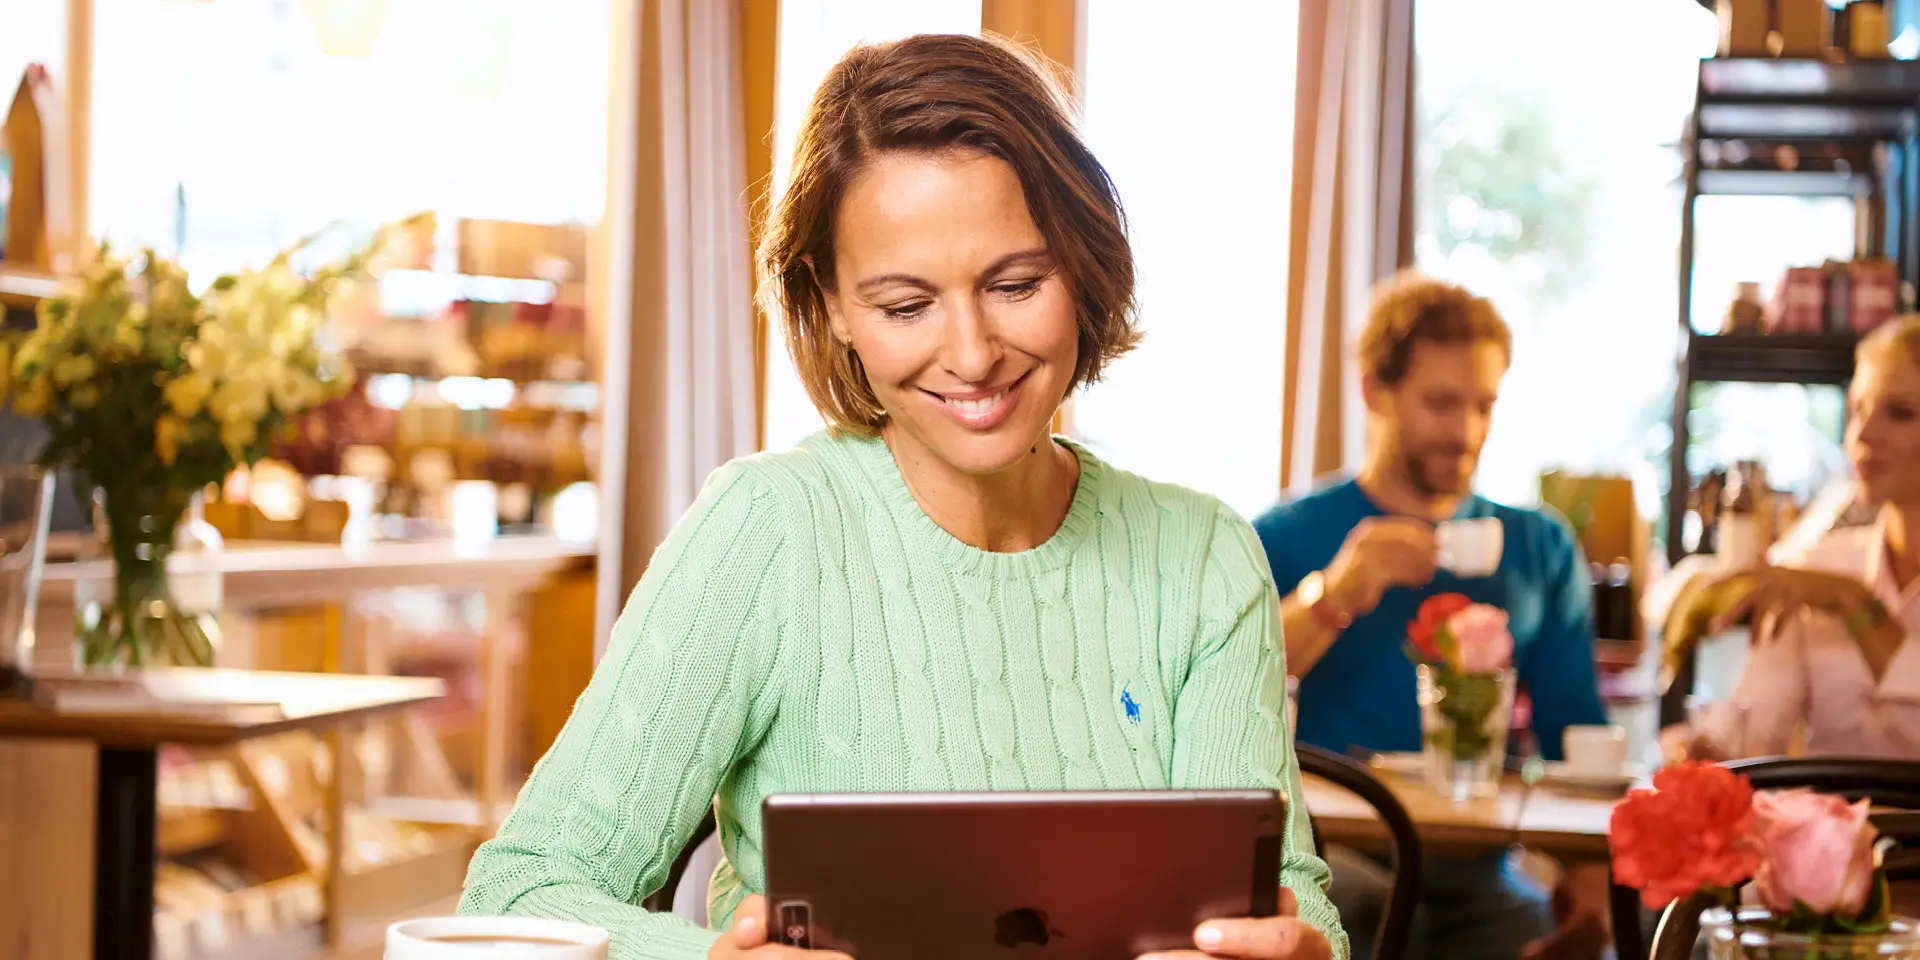 Une femme est assise à une table dans un café, un iPad à la main, en train de lire